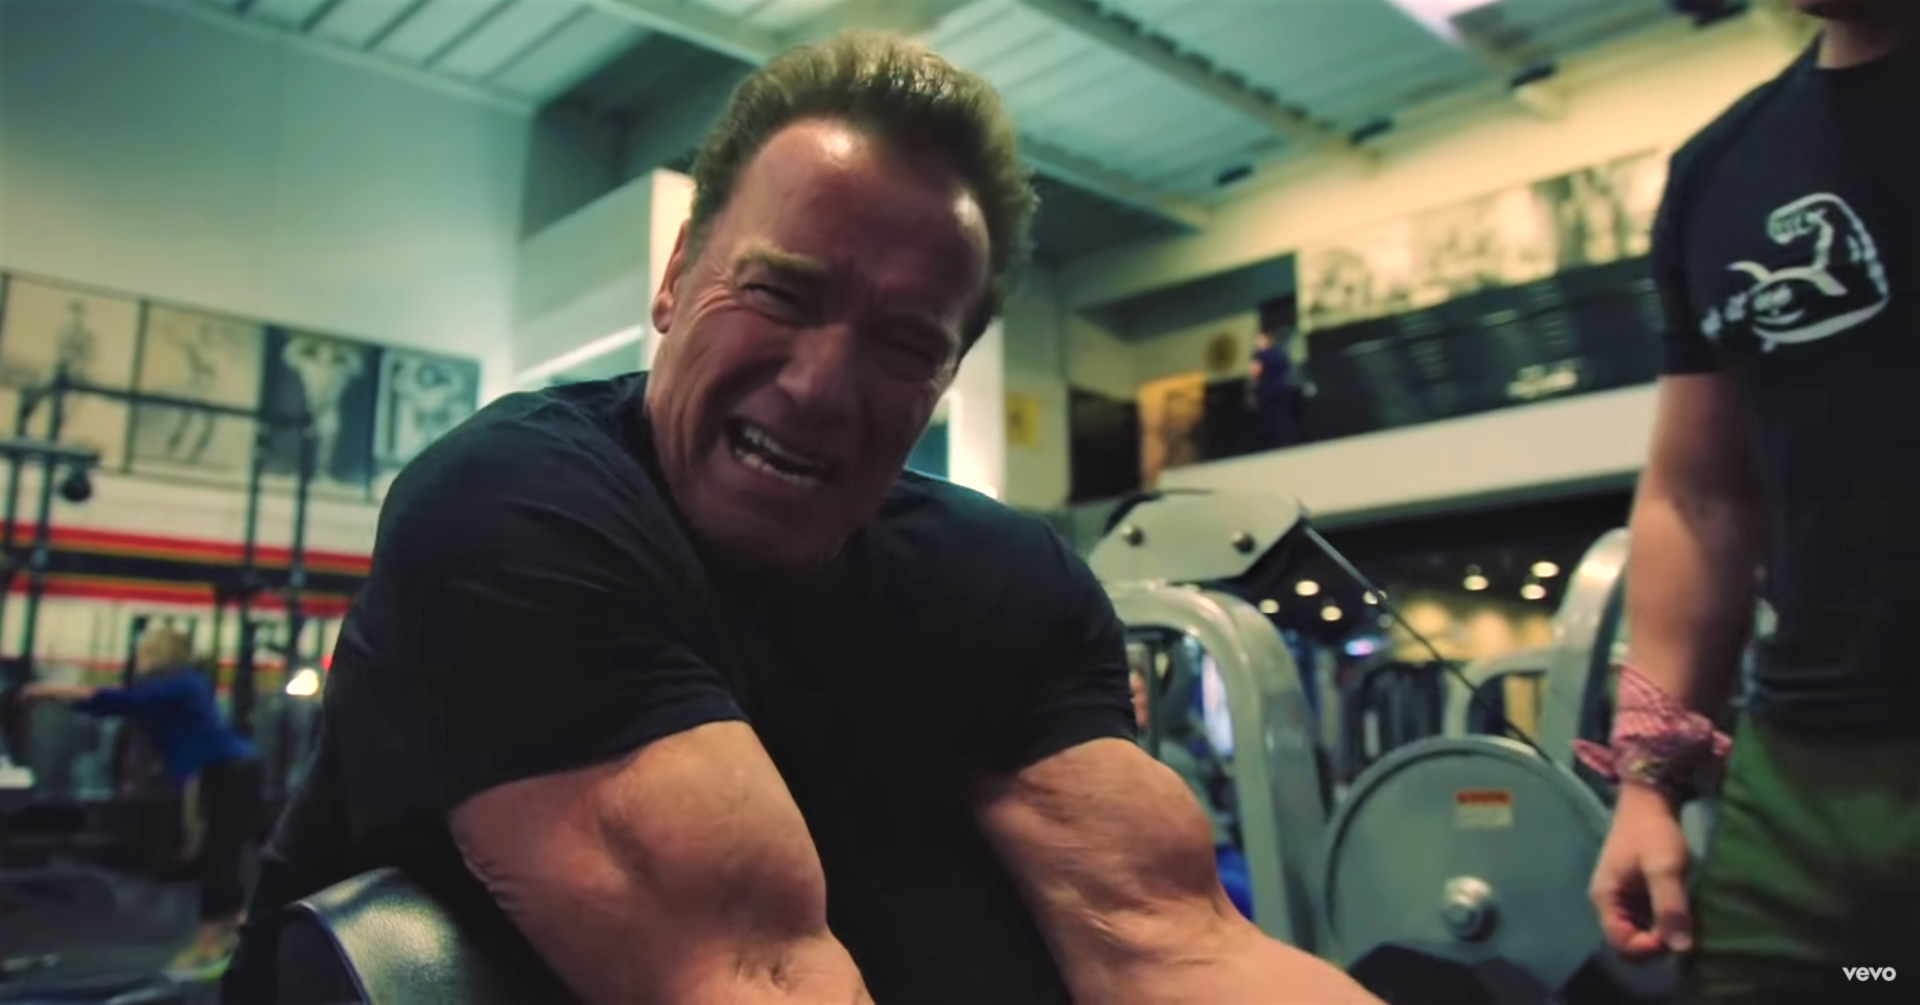 Arnold Schwarzenegger Shares a 360-rep Bodyweight Finisher